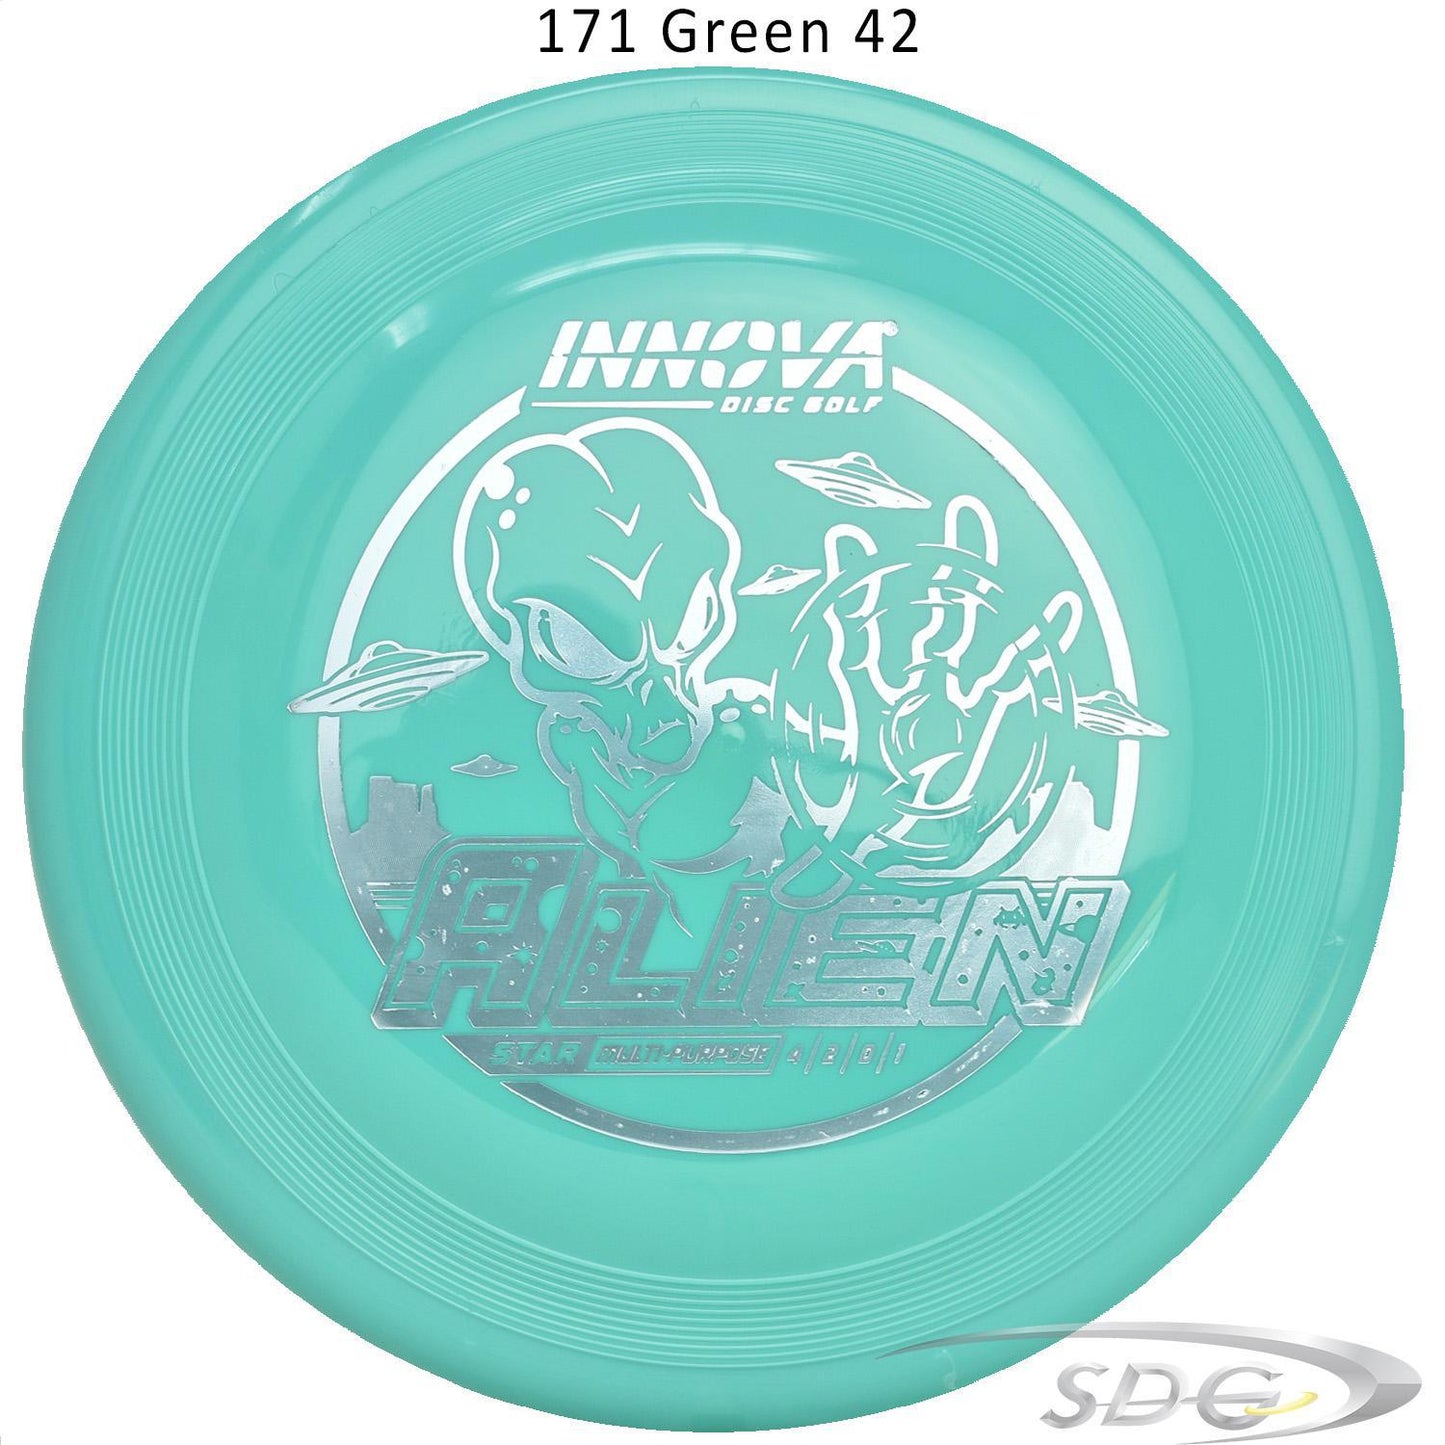 innova-star-alien-disc-golf-mid-range 171 Green 42 